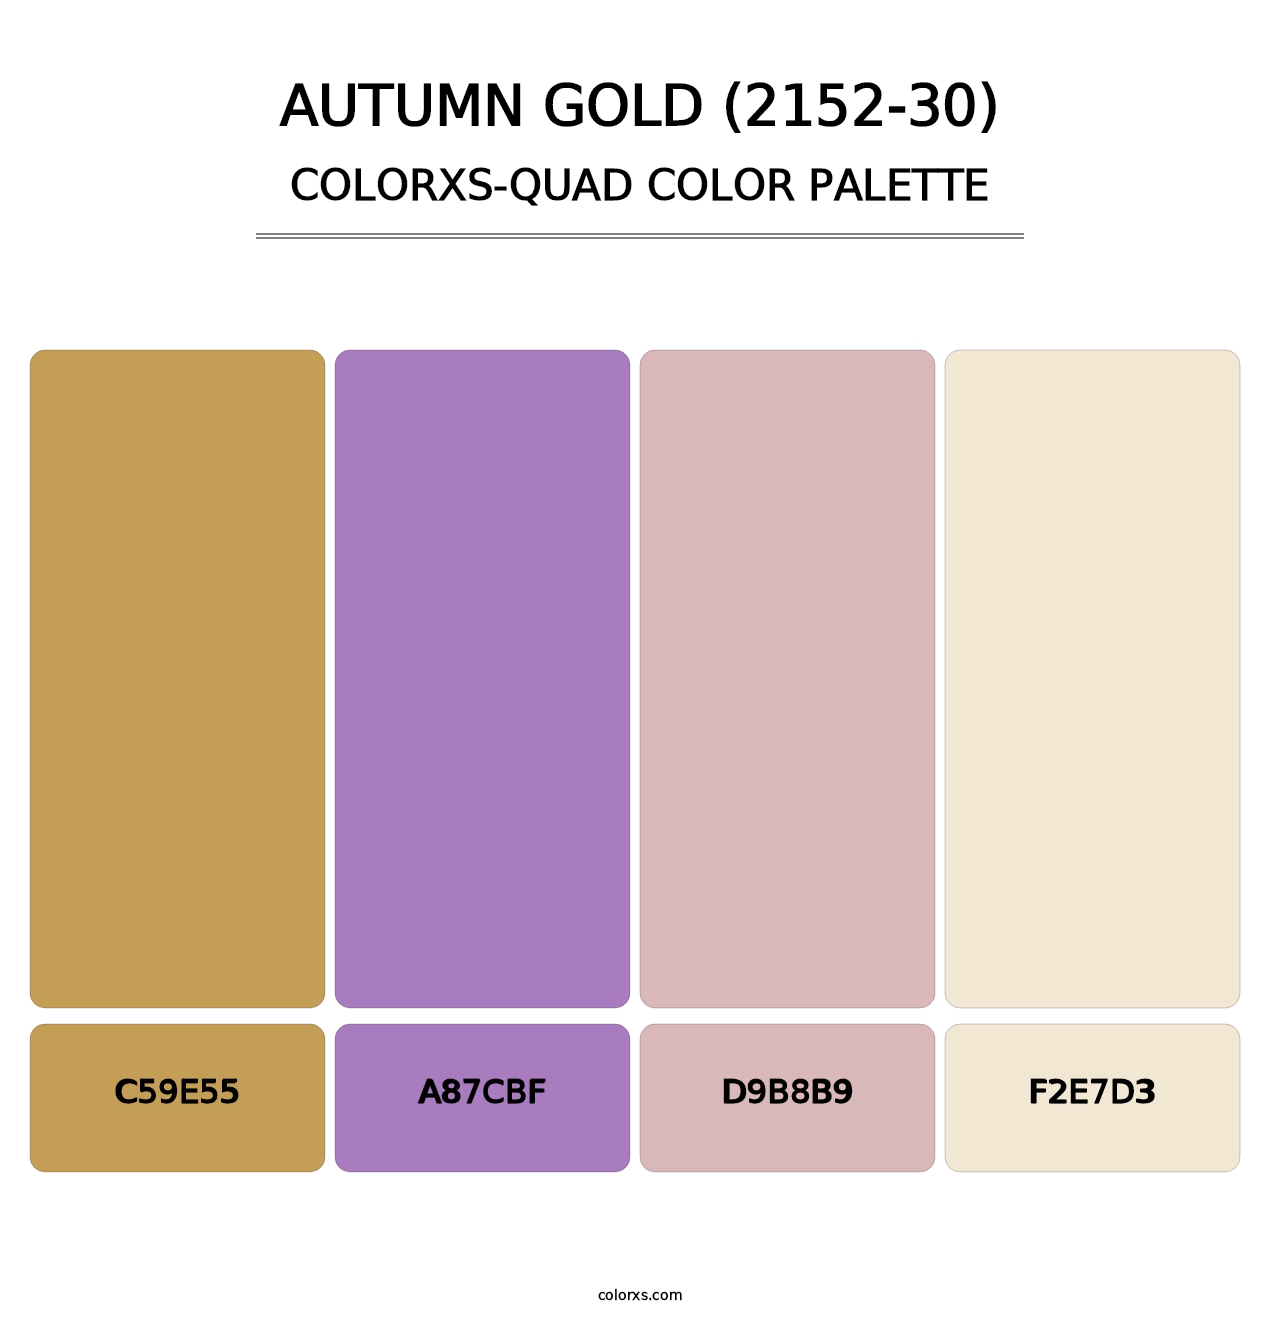 Autumn Gold (2152-30) - Colorxs Quad Palette